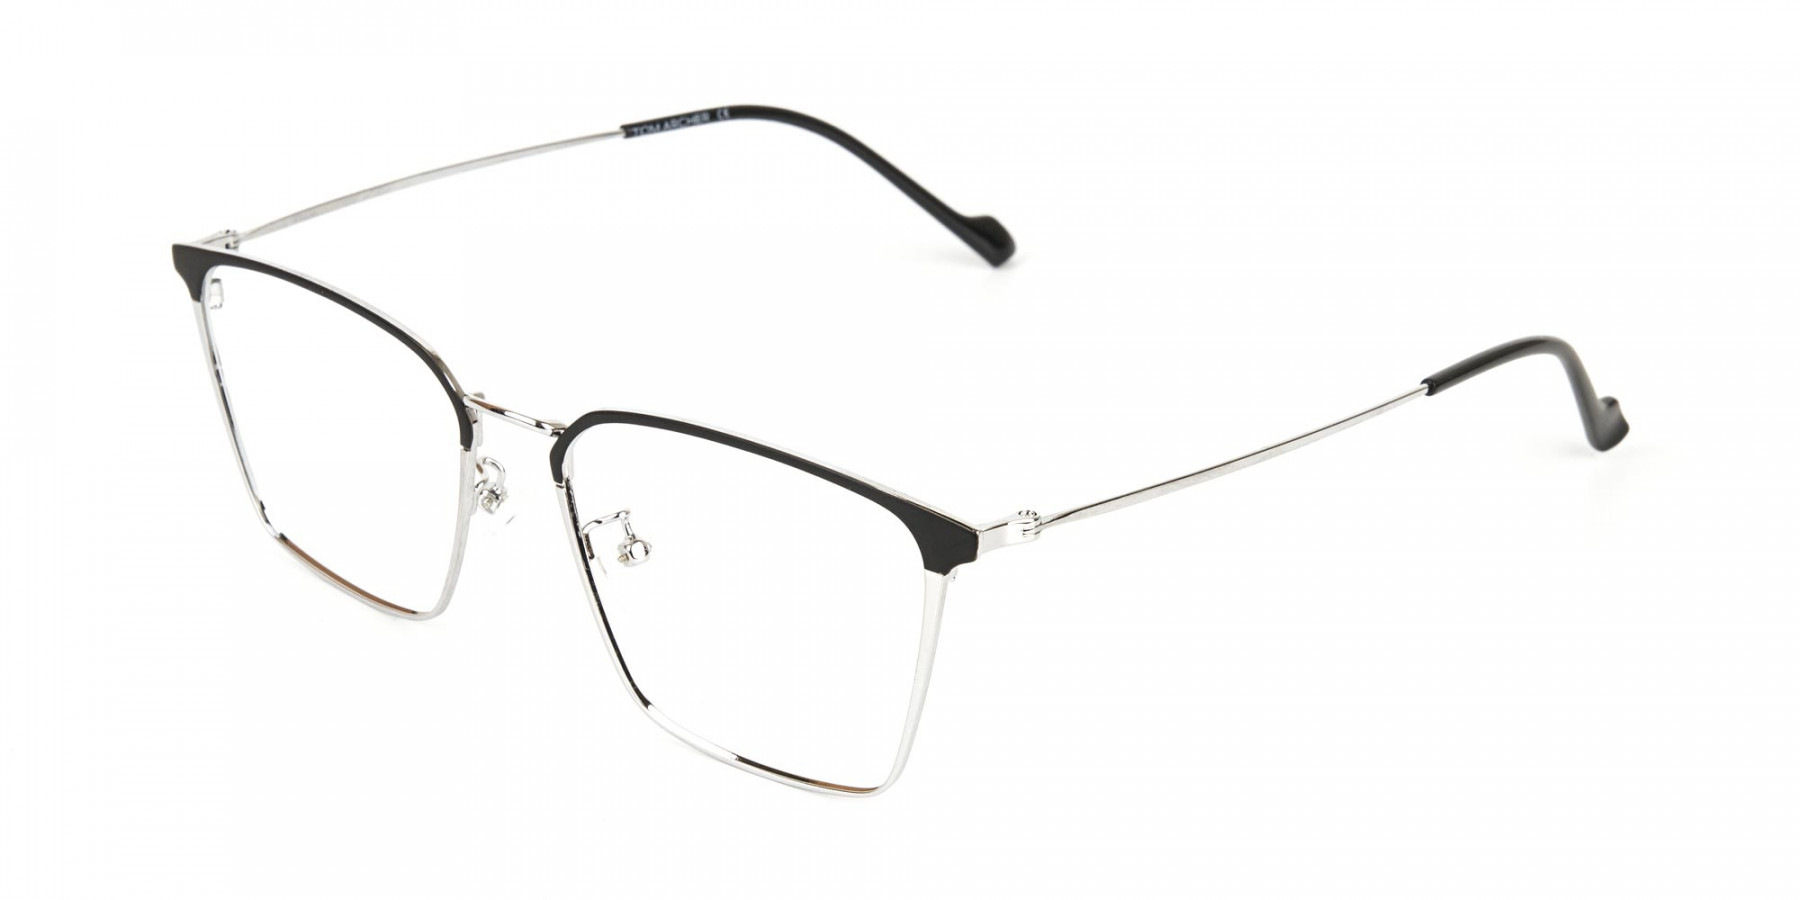 Silver Wayfarer Glasses in Lightweight Metal-1